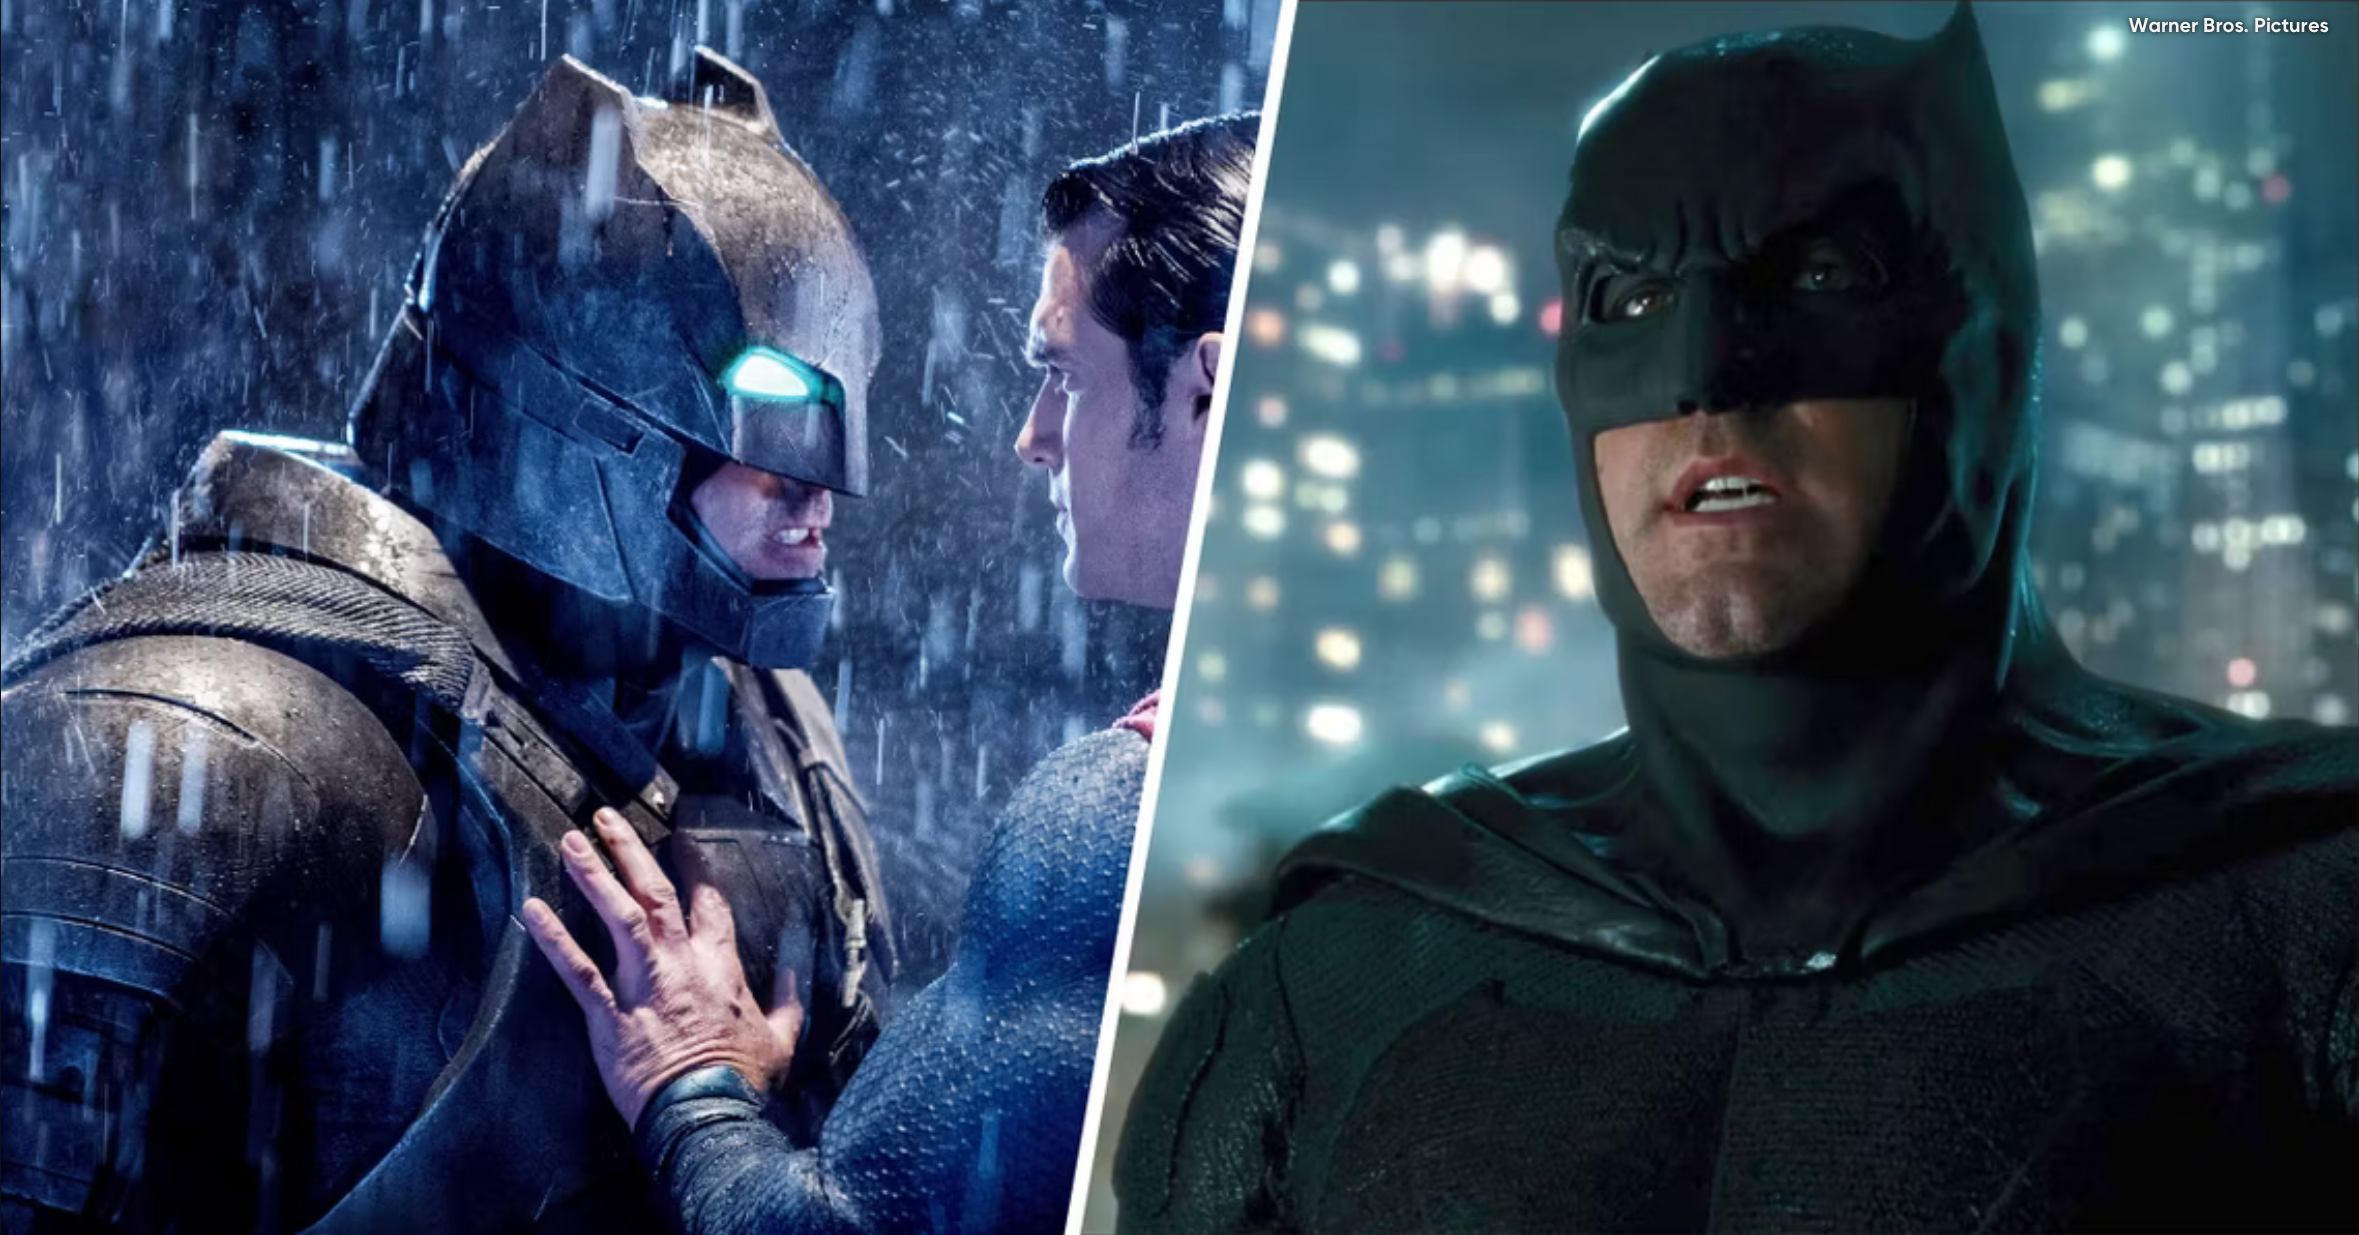 The Best Batman Of Them All? The Batman vs The Dark Knight